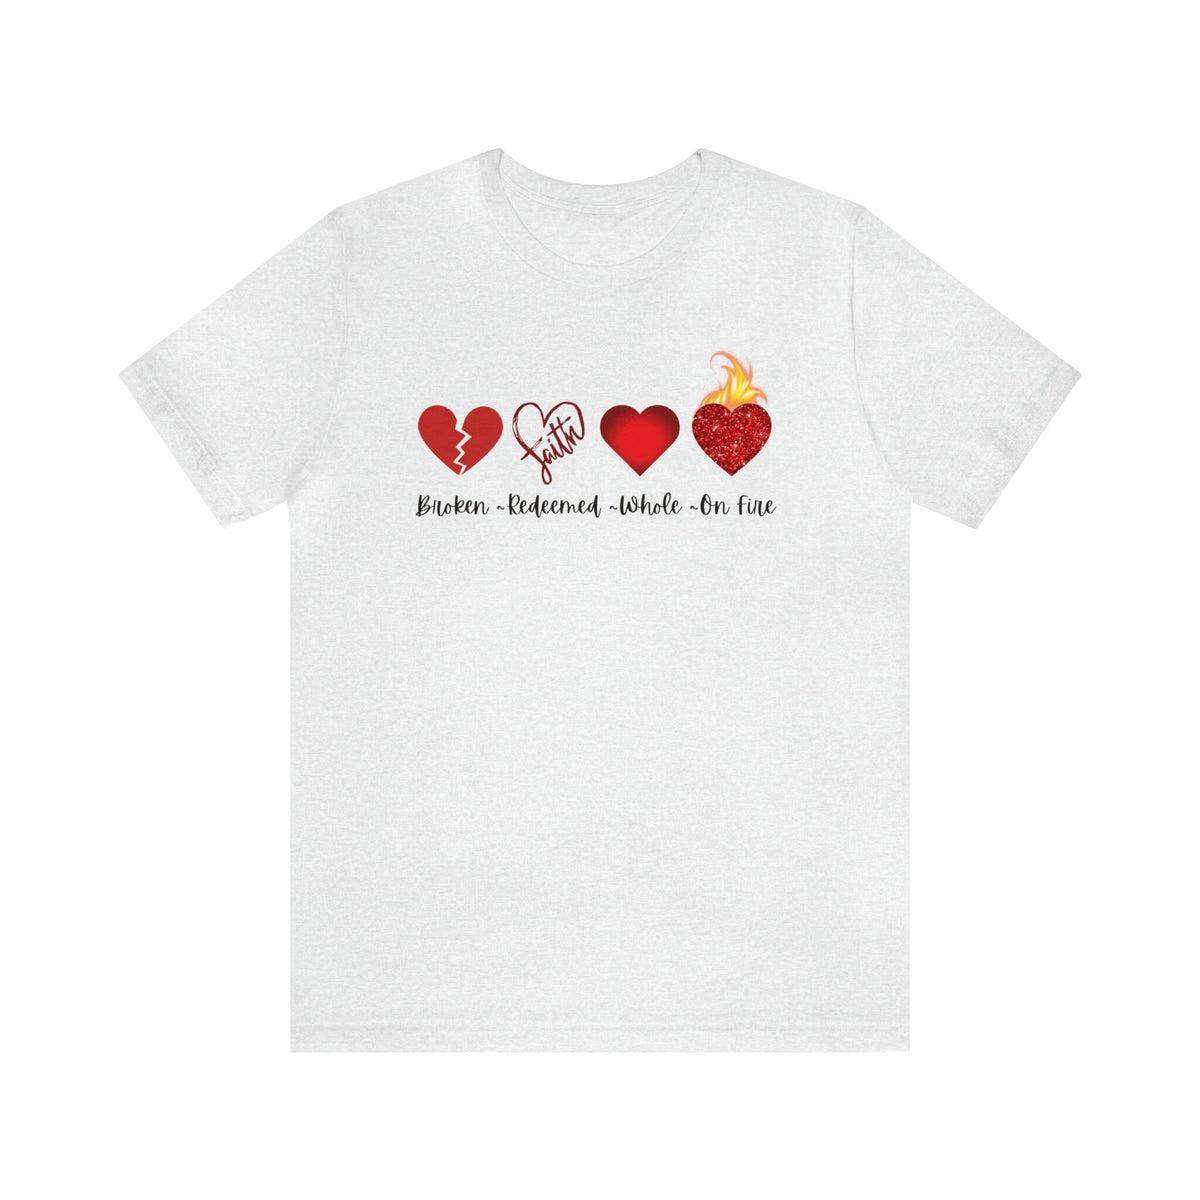 Custom Christian Tee Shirt Gift for Her Christian Mama T Shirt Gift for Mom Custom Youth Group Camp T-Shirt for Faith Gift Heart Redeemed